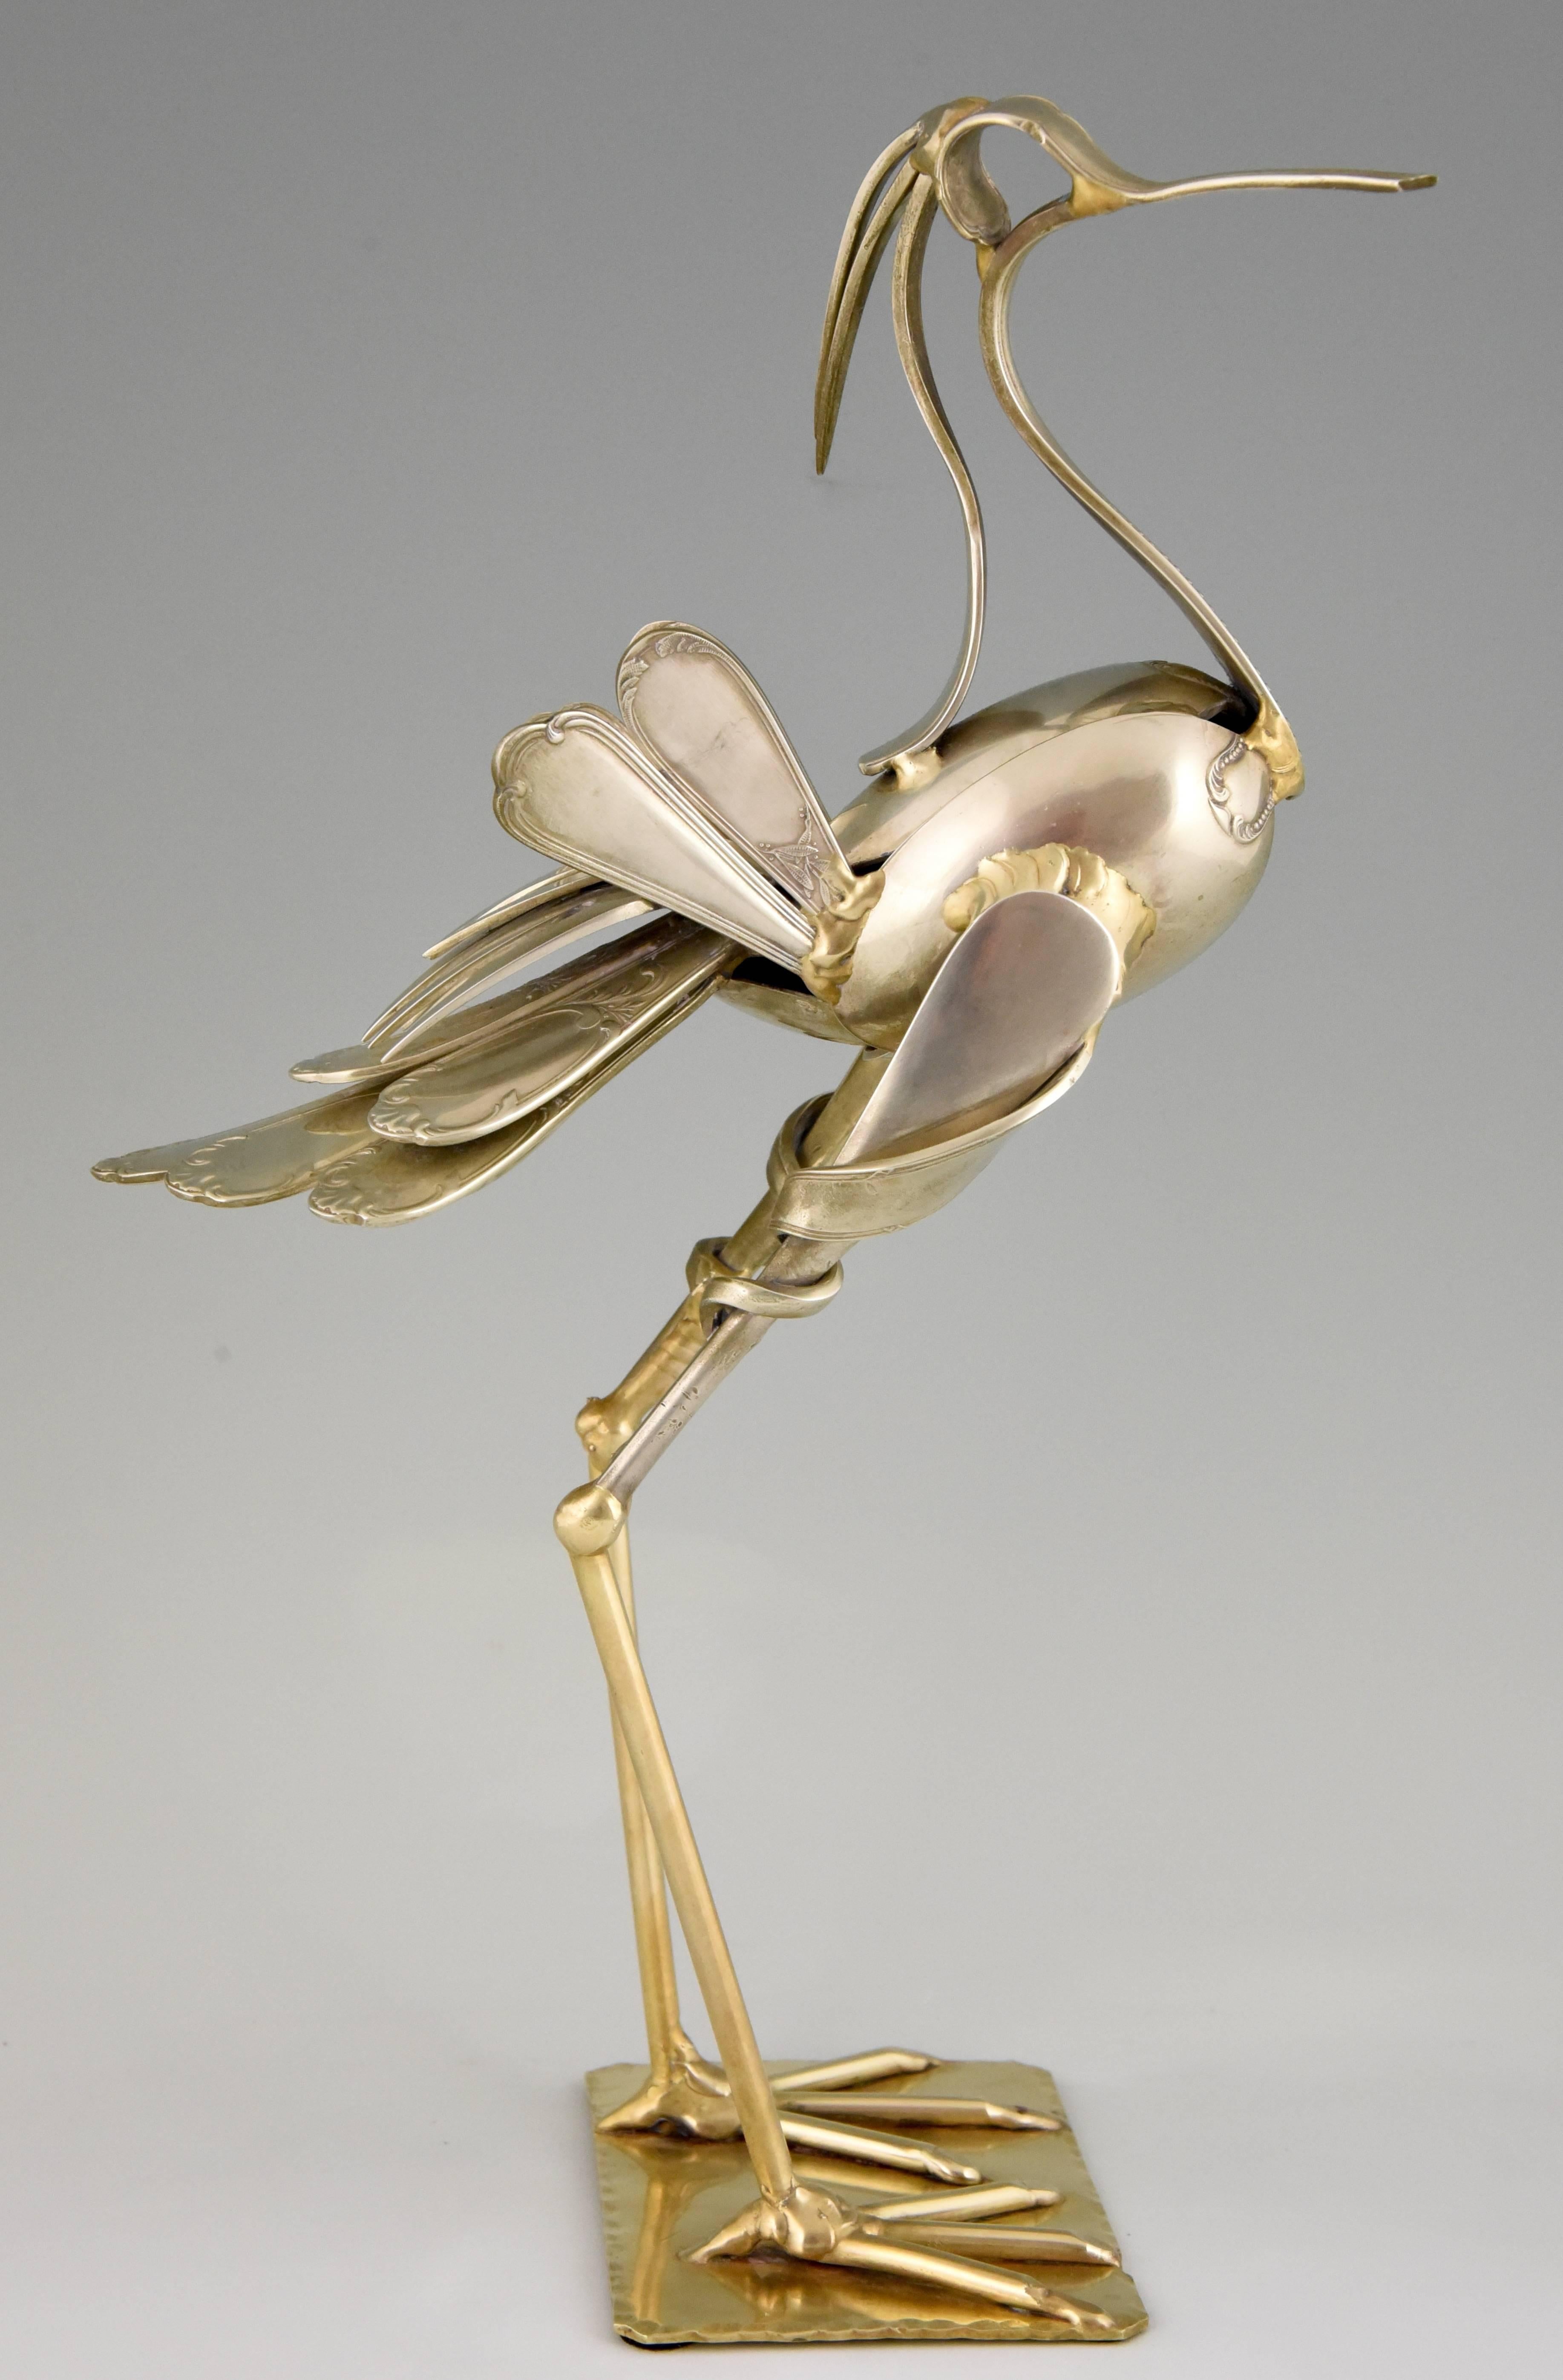 20th Century Modern Art Cutlery Sculpture of a Bird by Gerard Bouvier, France, 1998